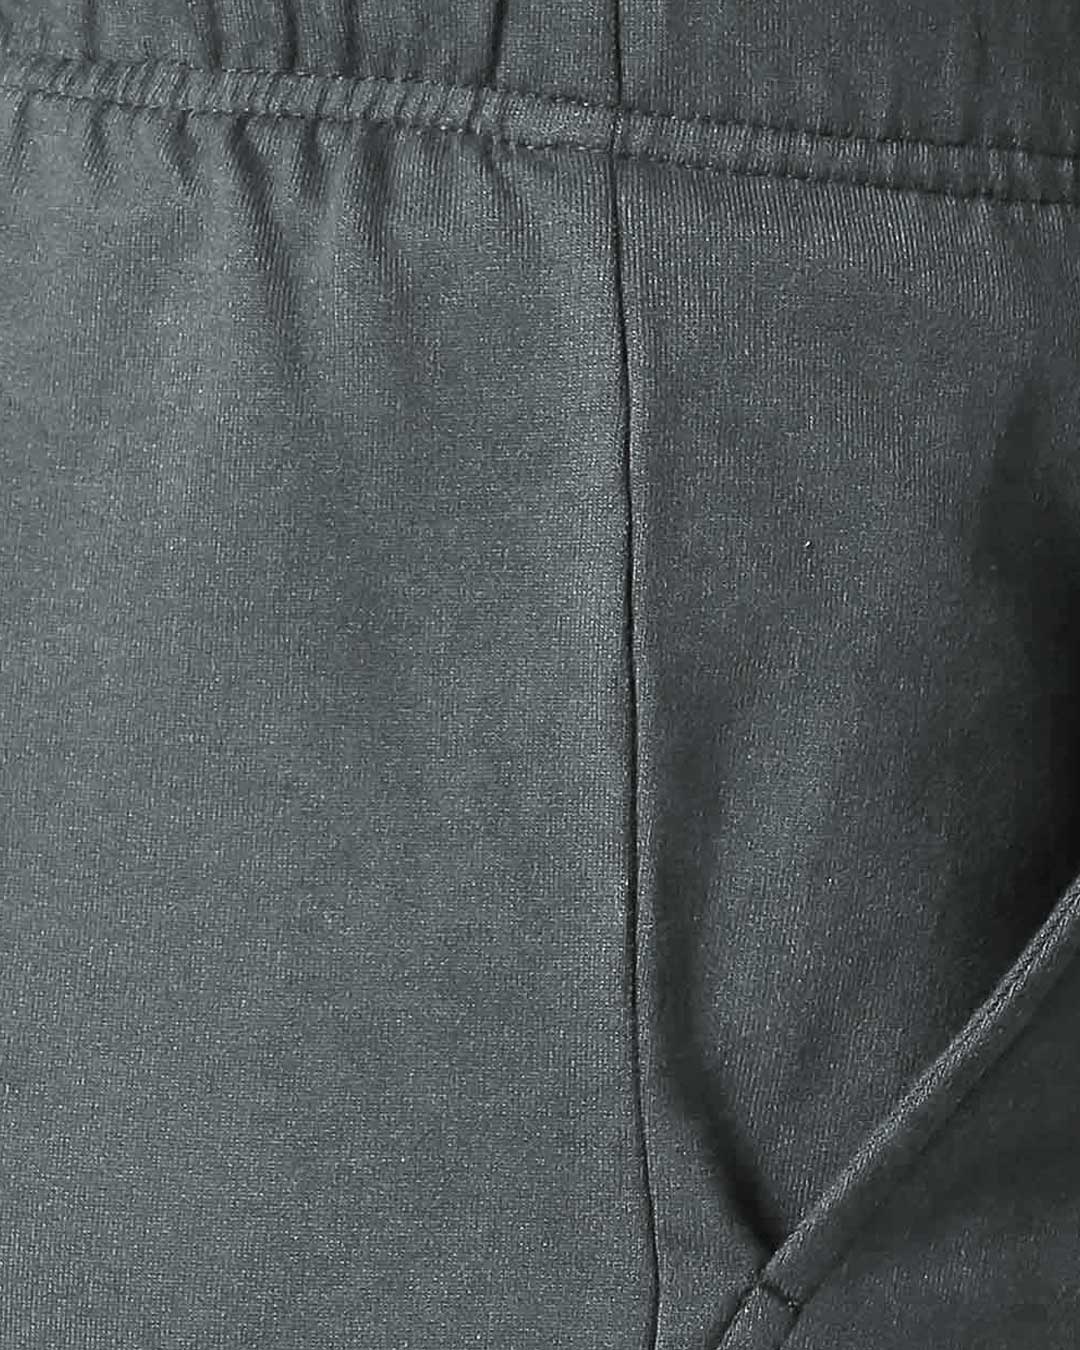 Shop Men's Nimbus Grey Casual Shorts